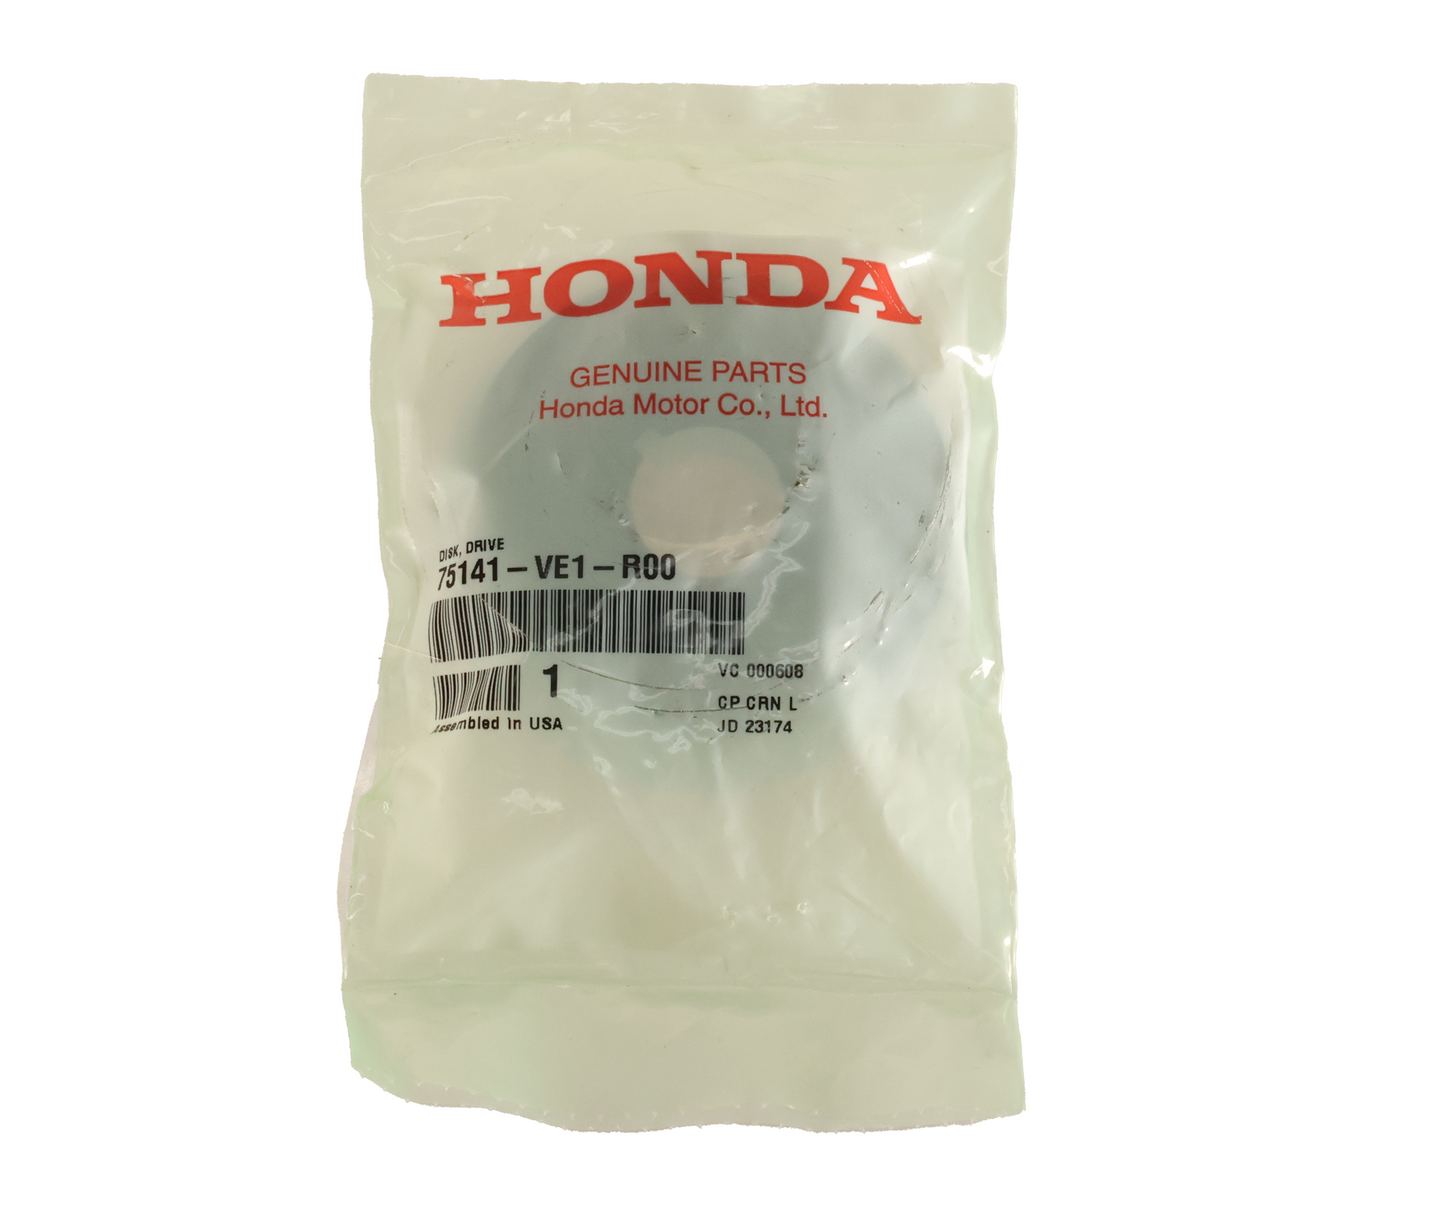 Honda Original Equipment Drive Disk - 75141-VE1-R00